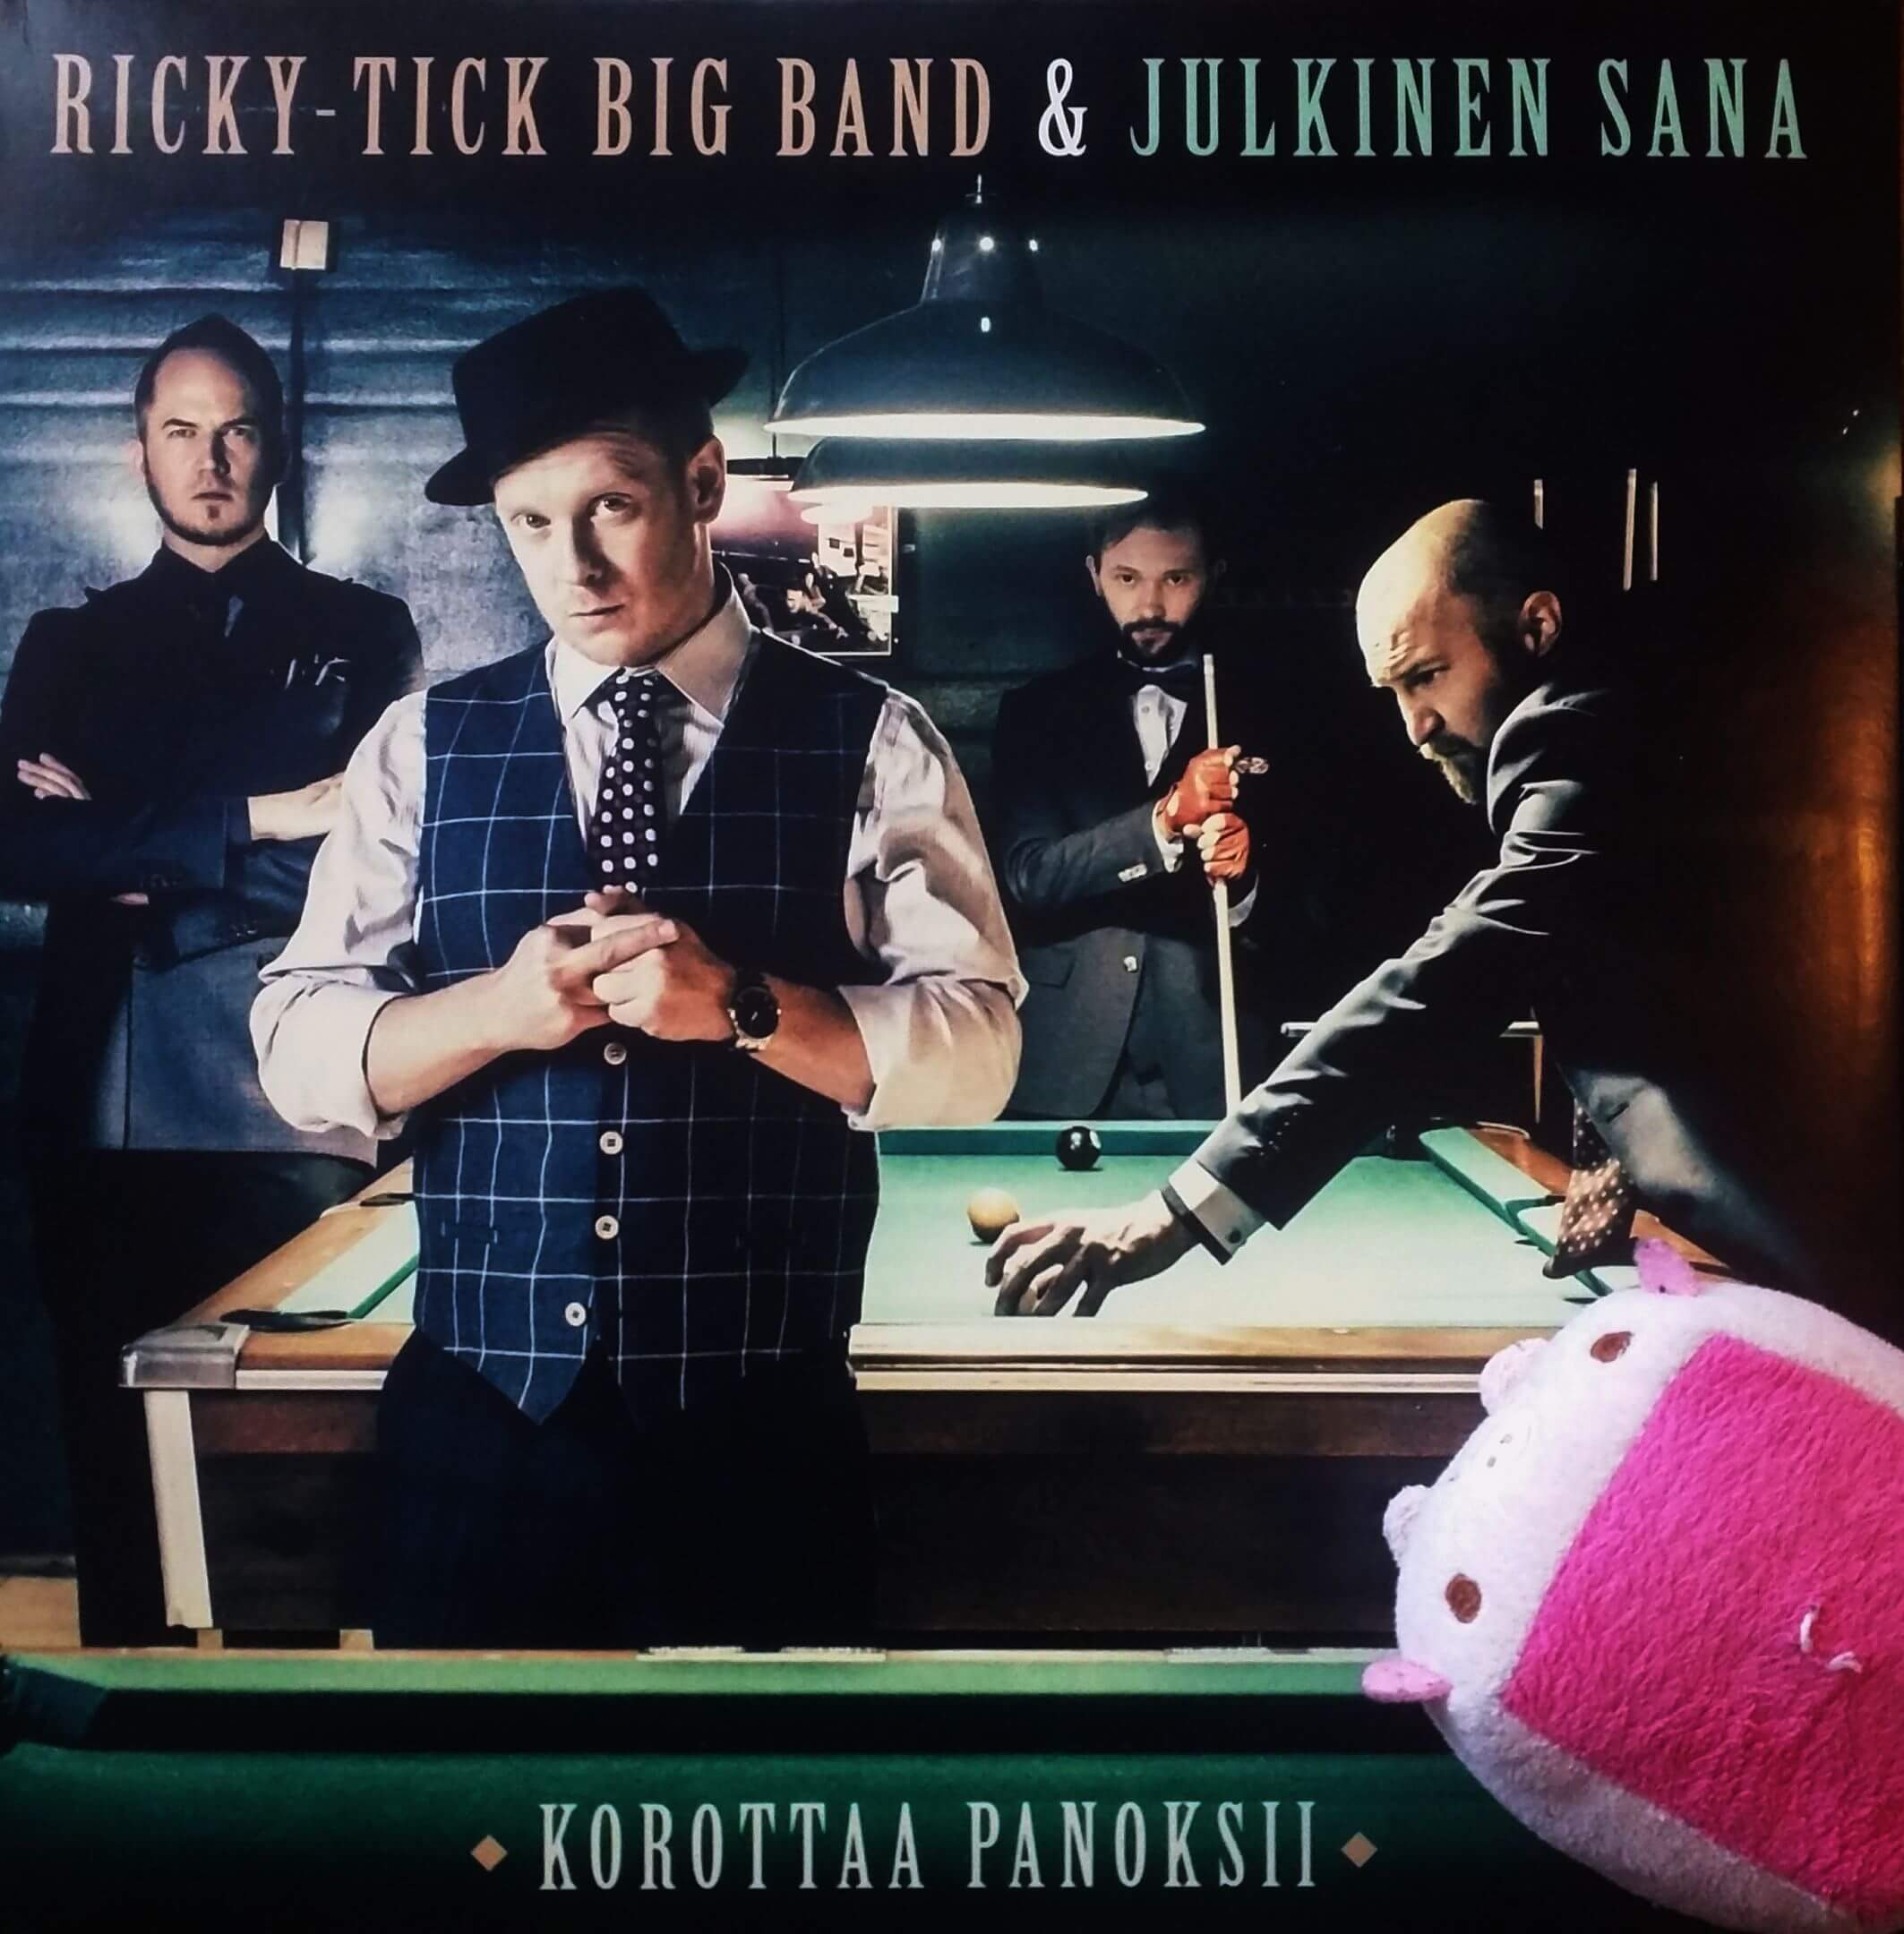 Ricky-Tick Big Band & Julkinen Sana – Korottaa Panoksii